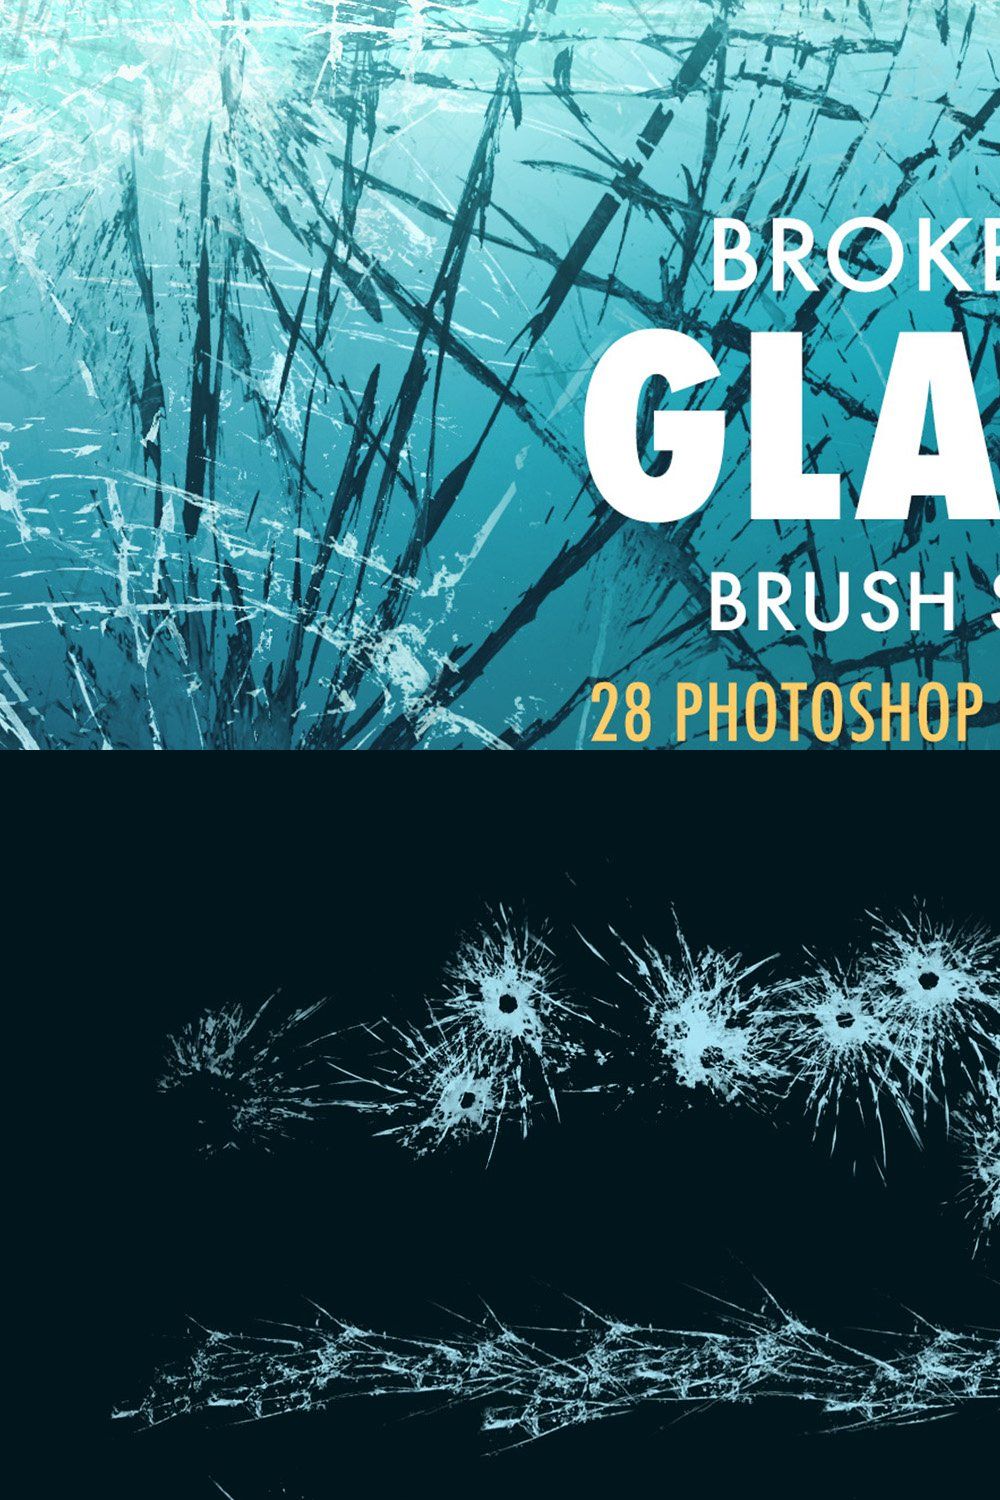 Broken glass Brush Set pinterest preview image.